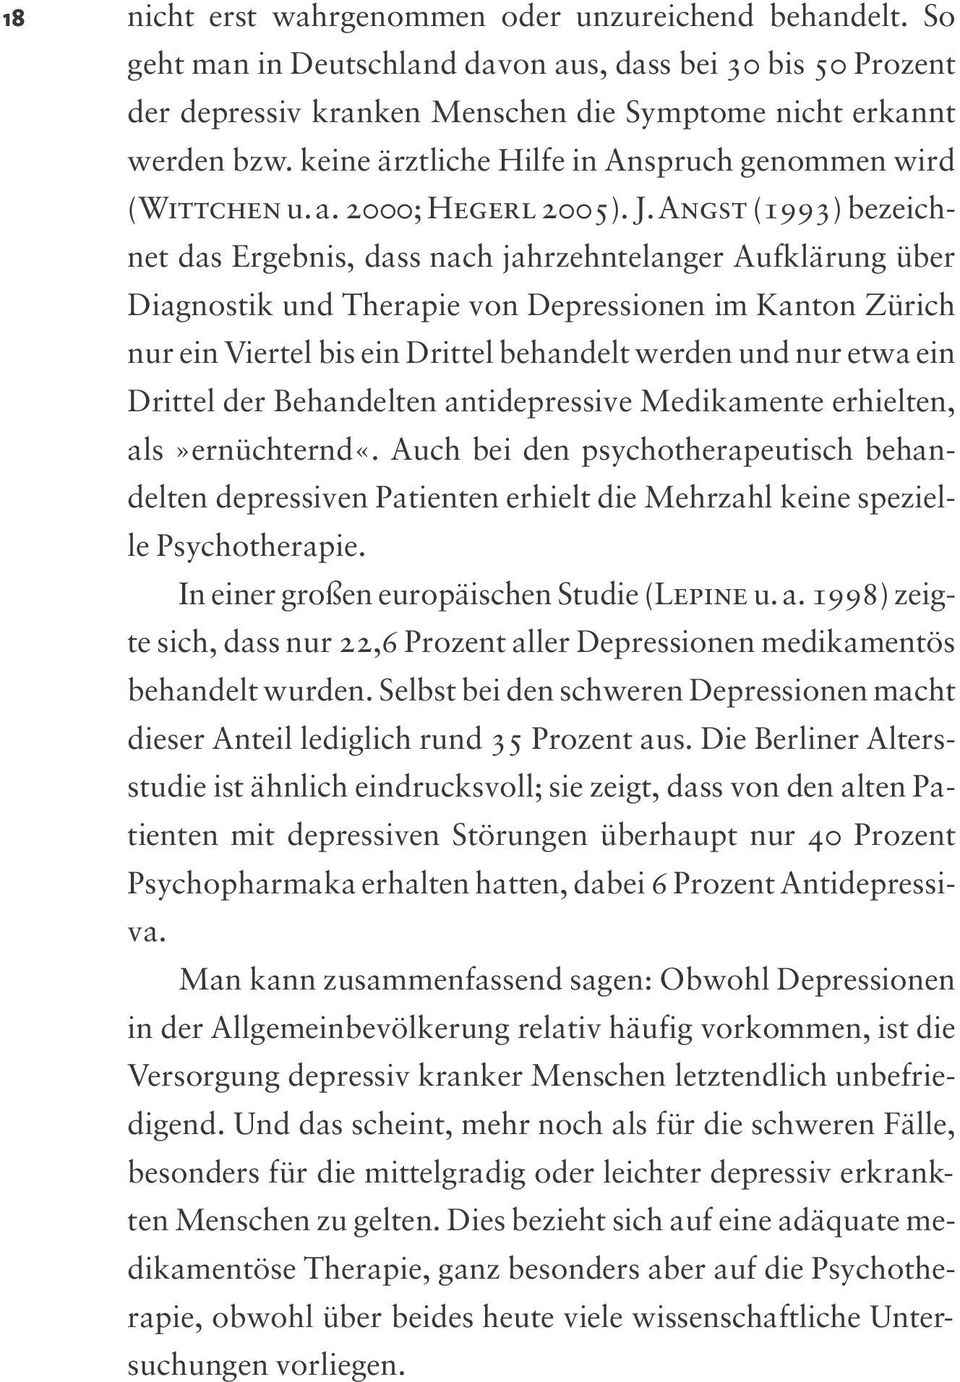 Angst (1993) bezeichnet das Ergebnis, dass nach jahrzehntelanger Aufklärung über Diagnostik und Therapie von Depressionen im Kanton Zürich nur ein Viertel bis ein Drittel behandelt werden und nur